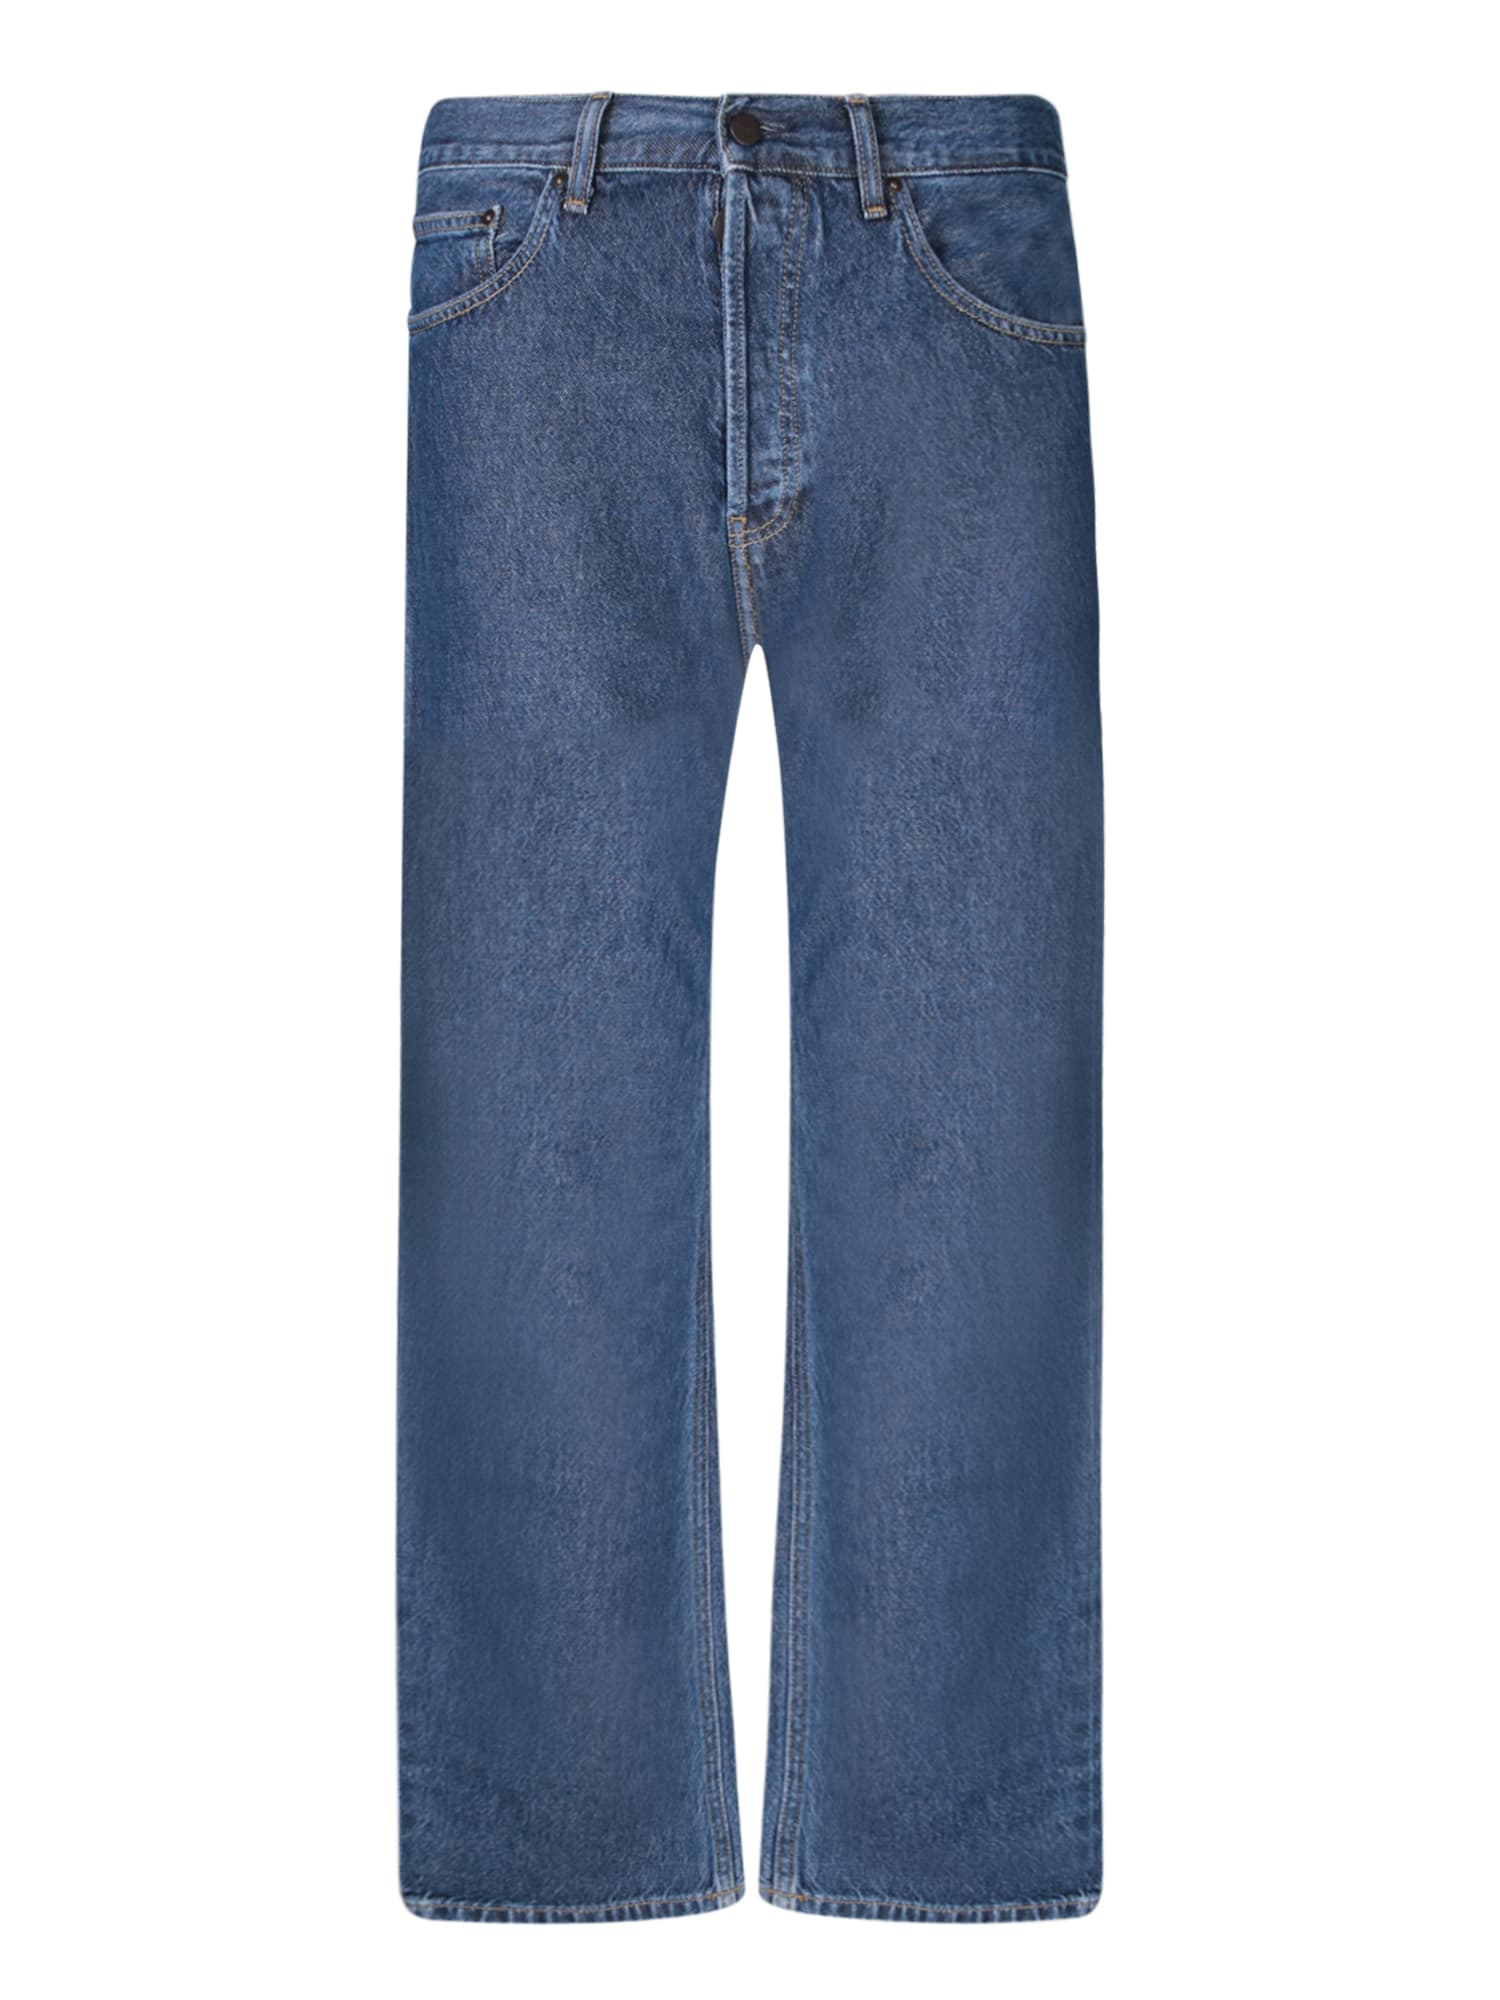 Shop Carhartt Nolan Blue Jeans